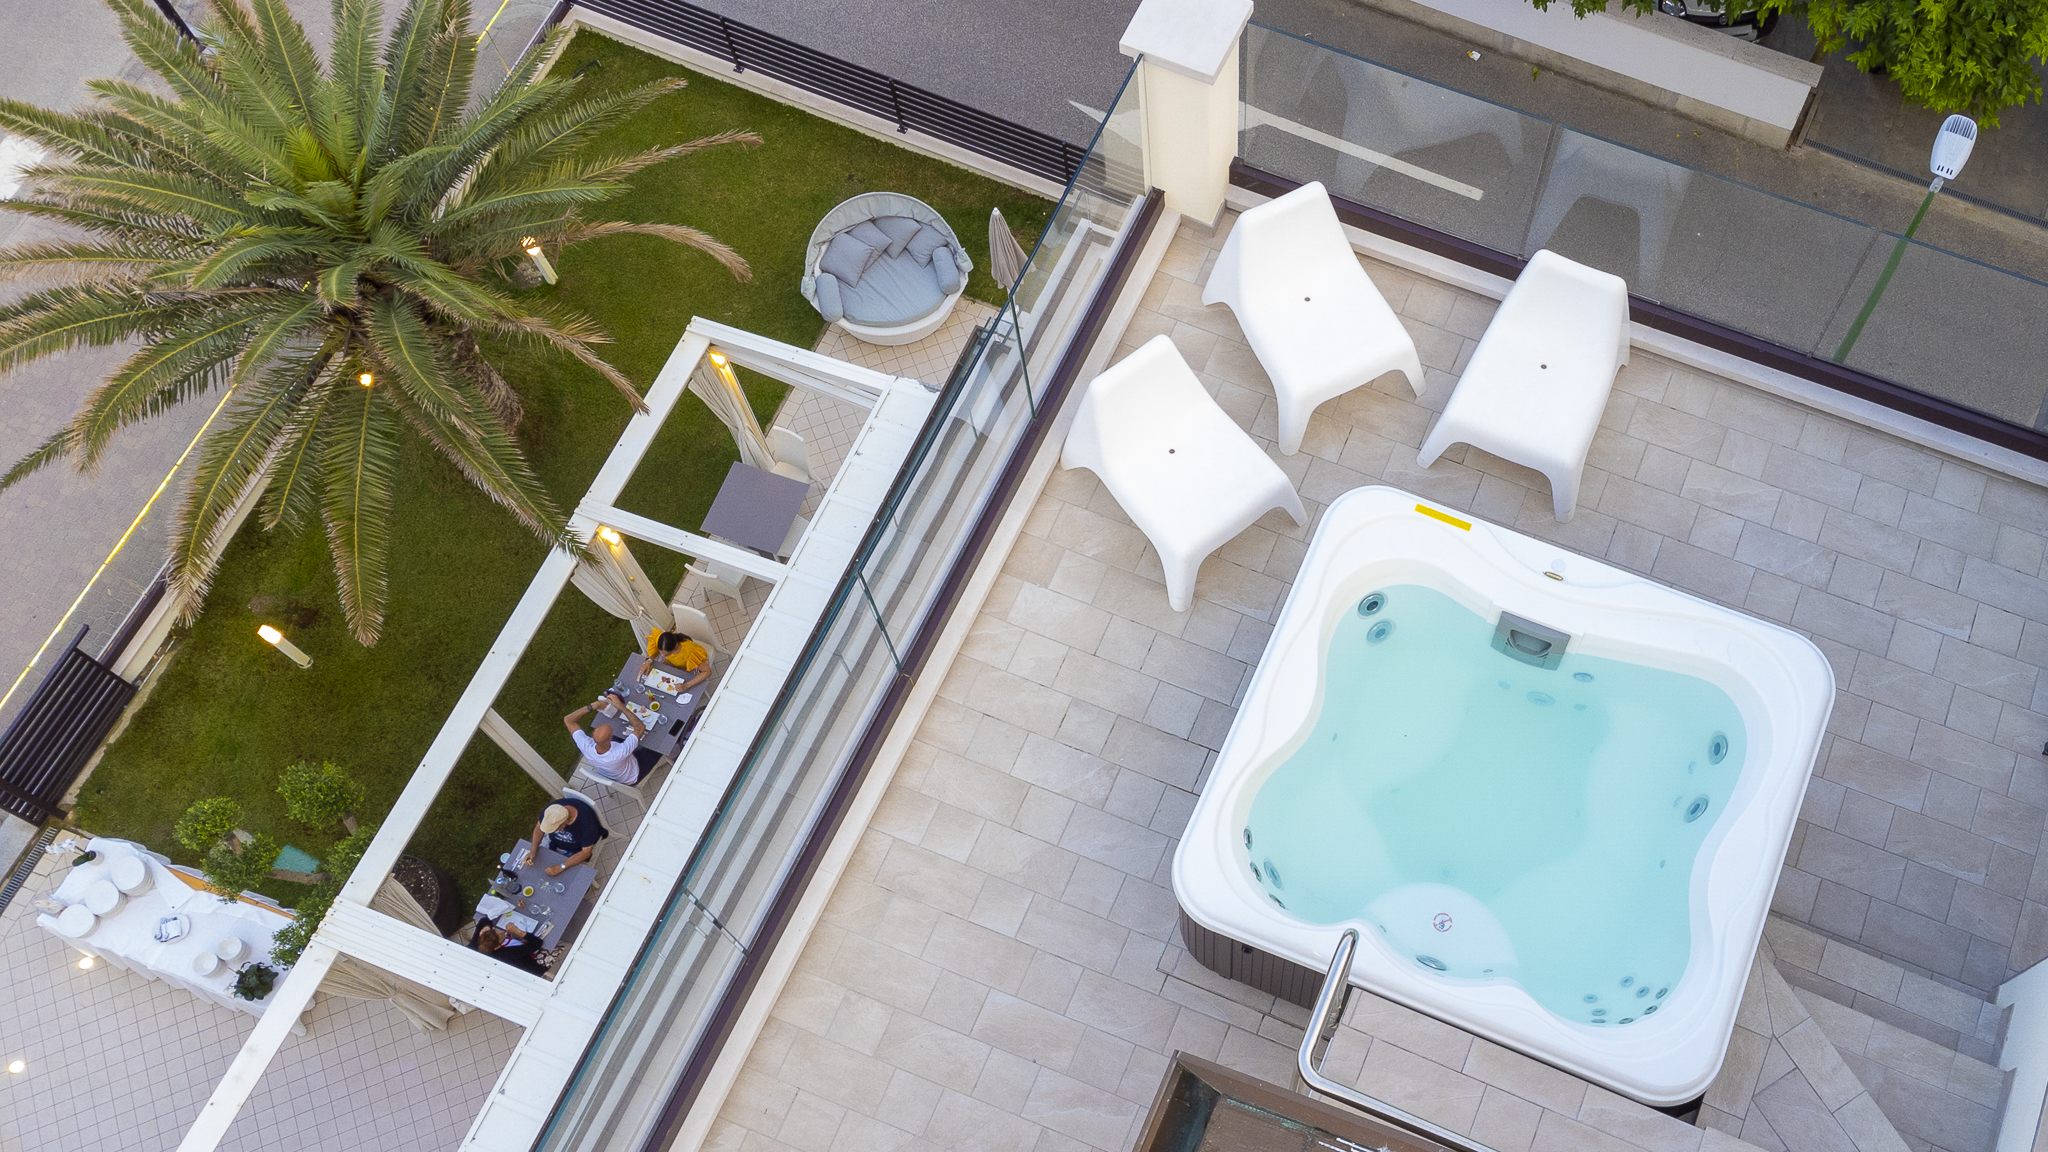 Vacanze rilassanti in hotel con il valore aggiunto offerto dai sistemi Spa Jacuzzi